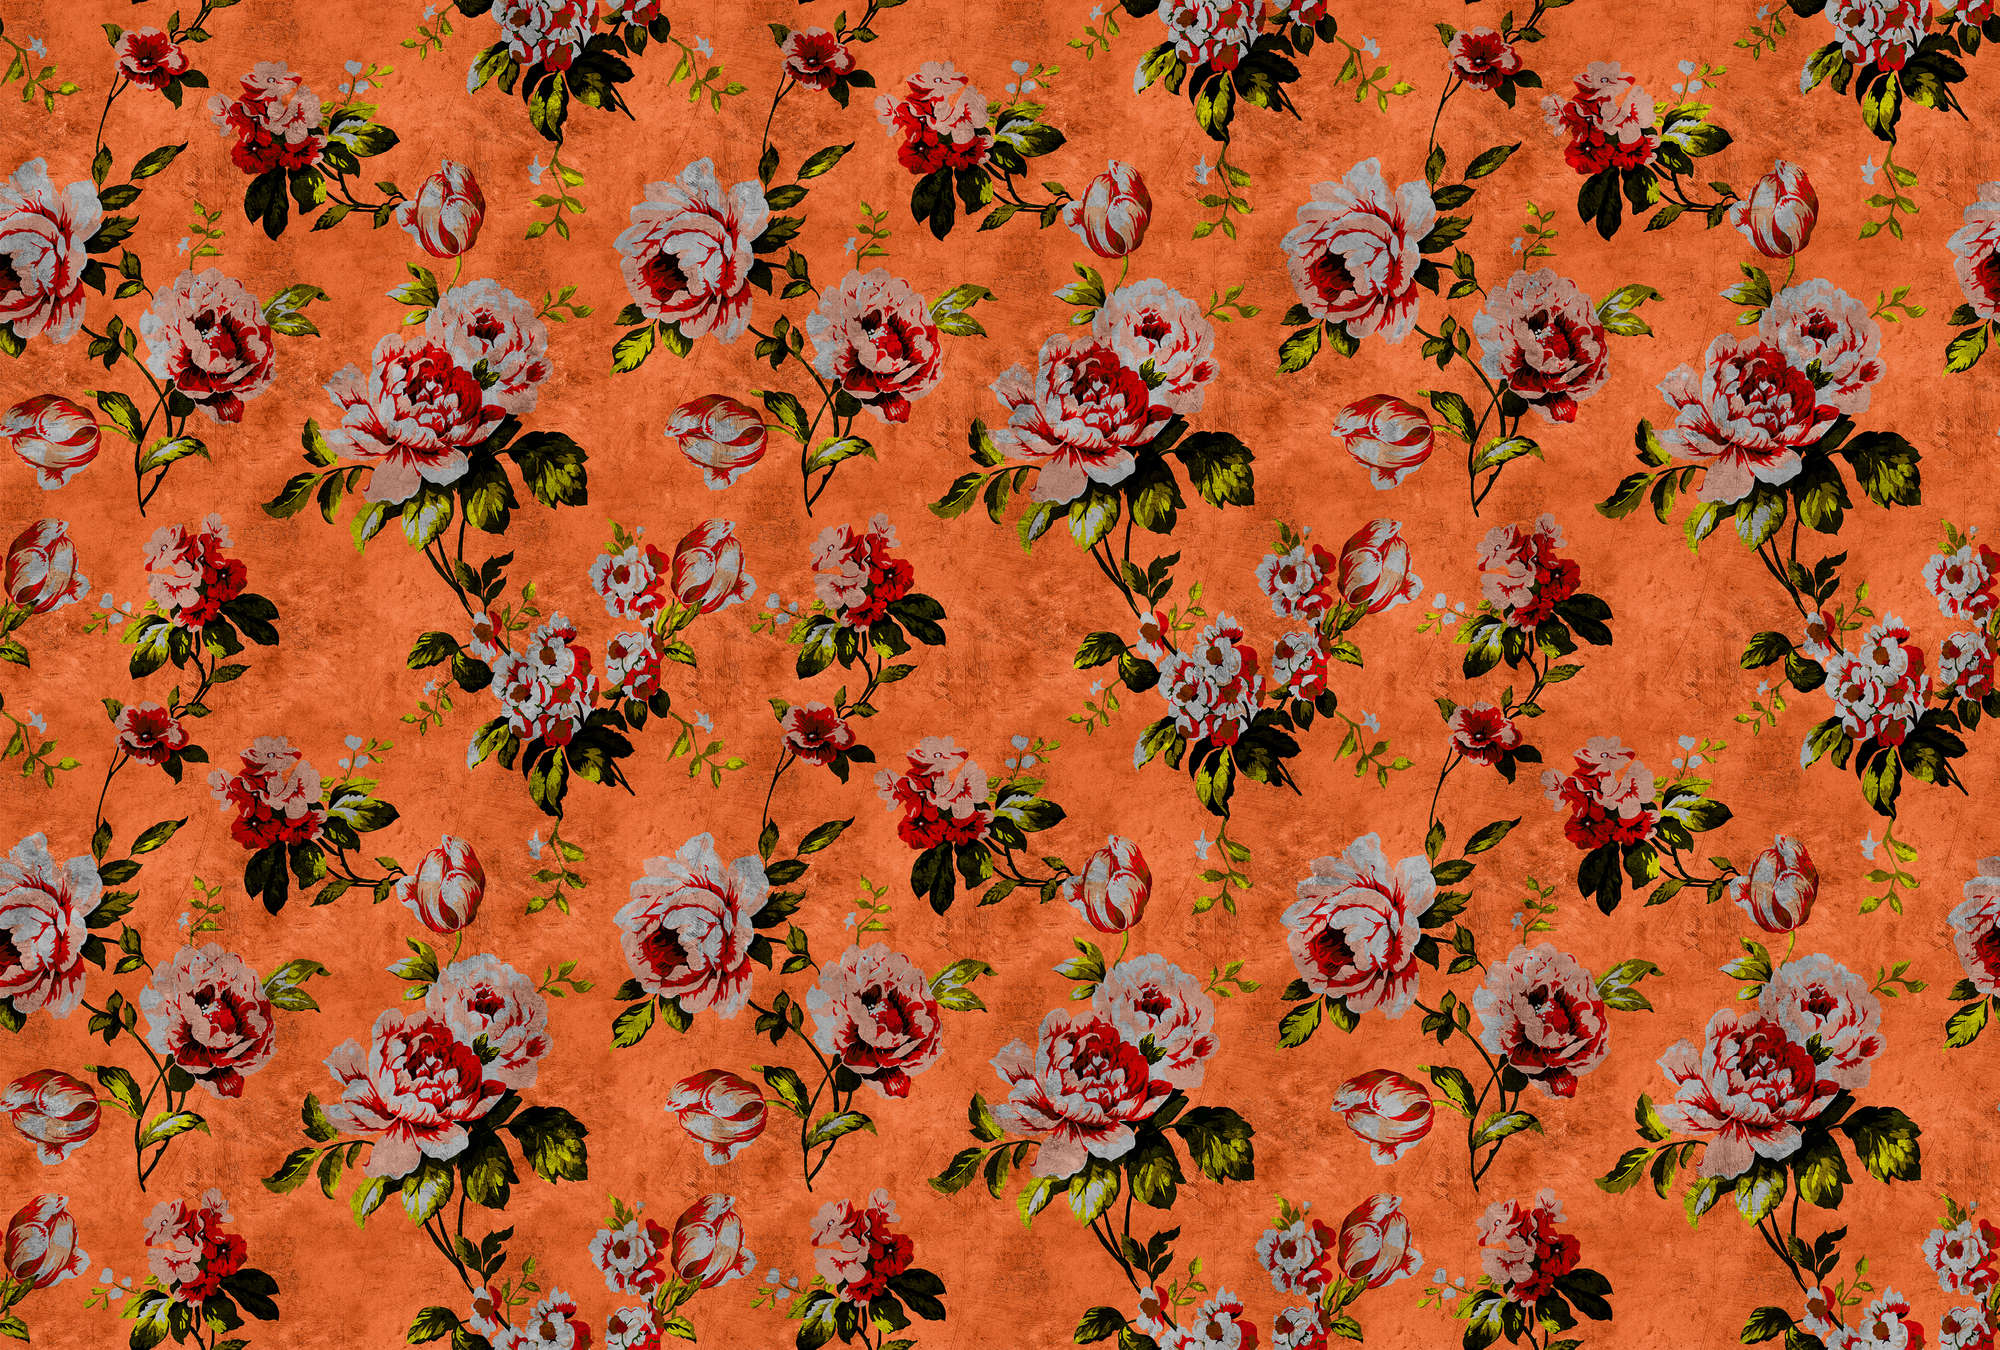             Wilde rozen 2 - Rozen fotobehang in krasstructuur in retro look, oranje - geel, oranje | structuur vlieseline
        